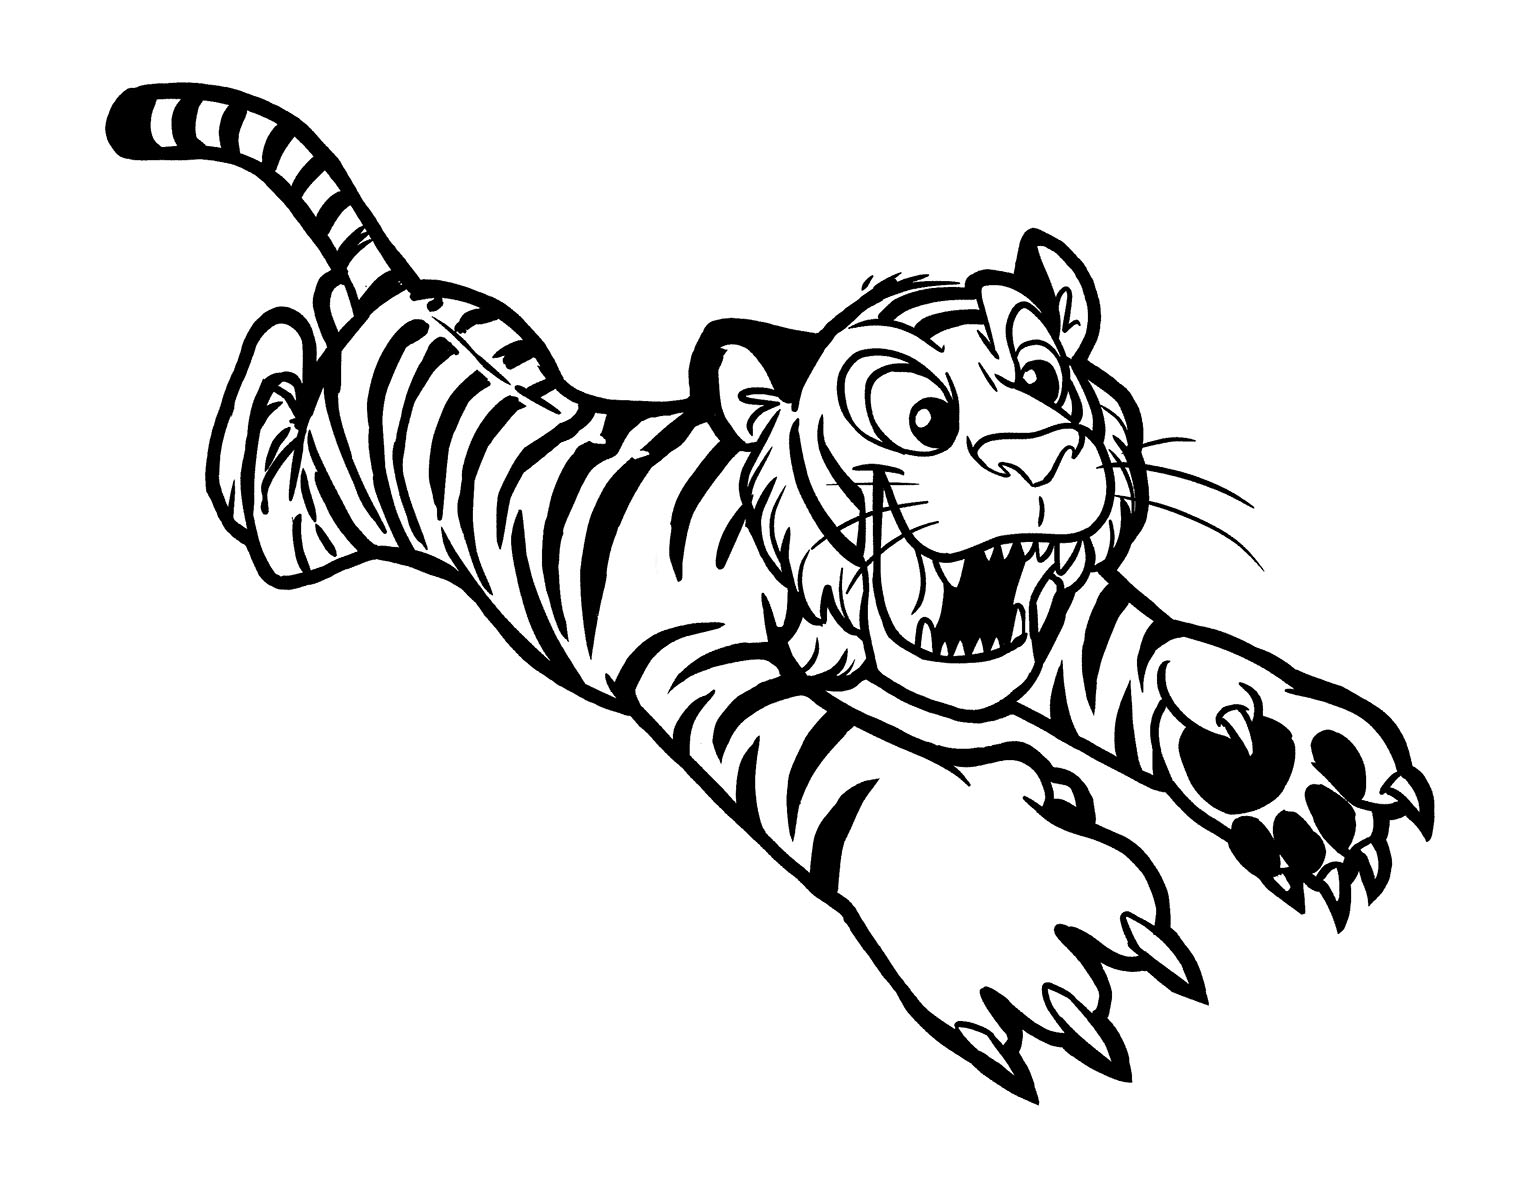 Dibujos para colorear de tigres para niños